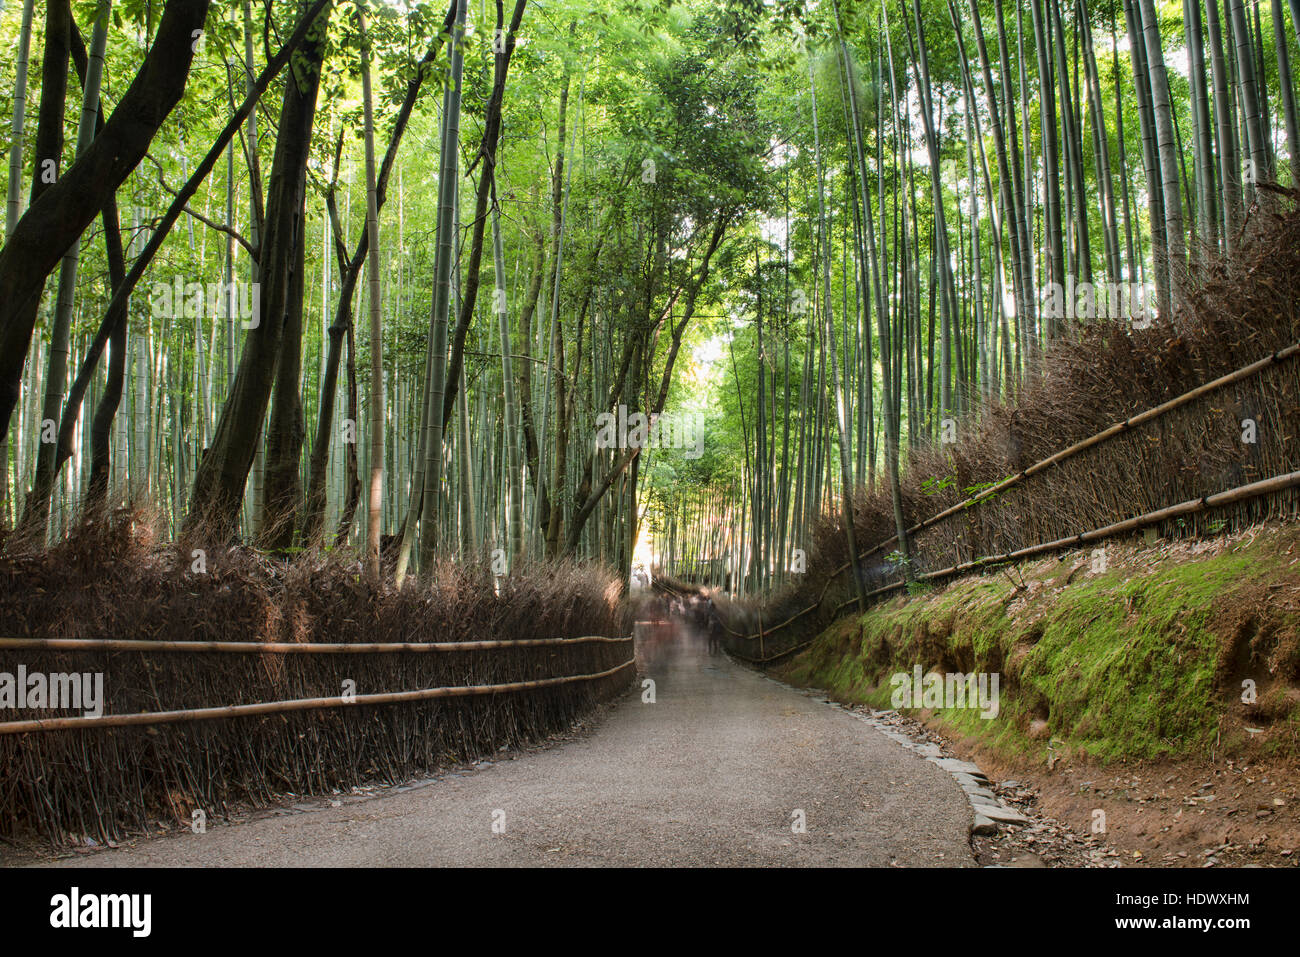 Une longue exposition à une foule, forêt de bambous d'Arashiyama, Kyoto, Japon Banque D'Images